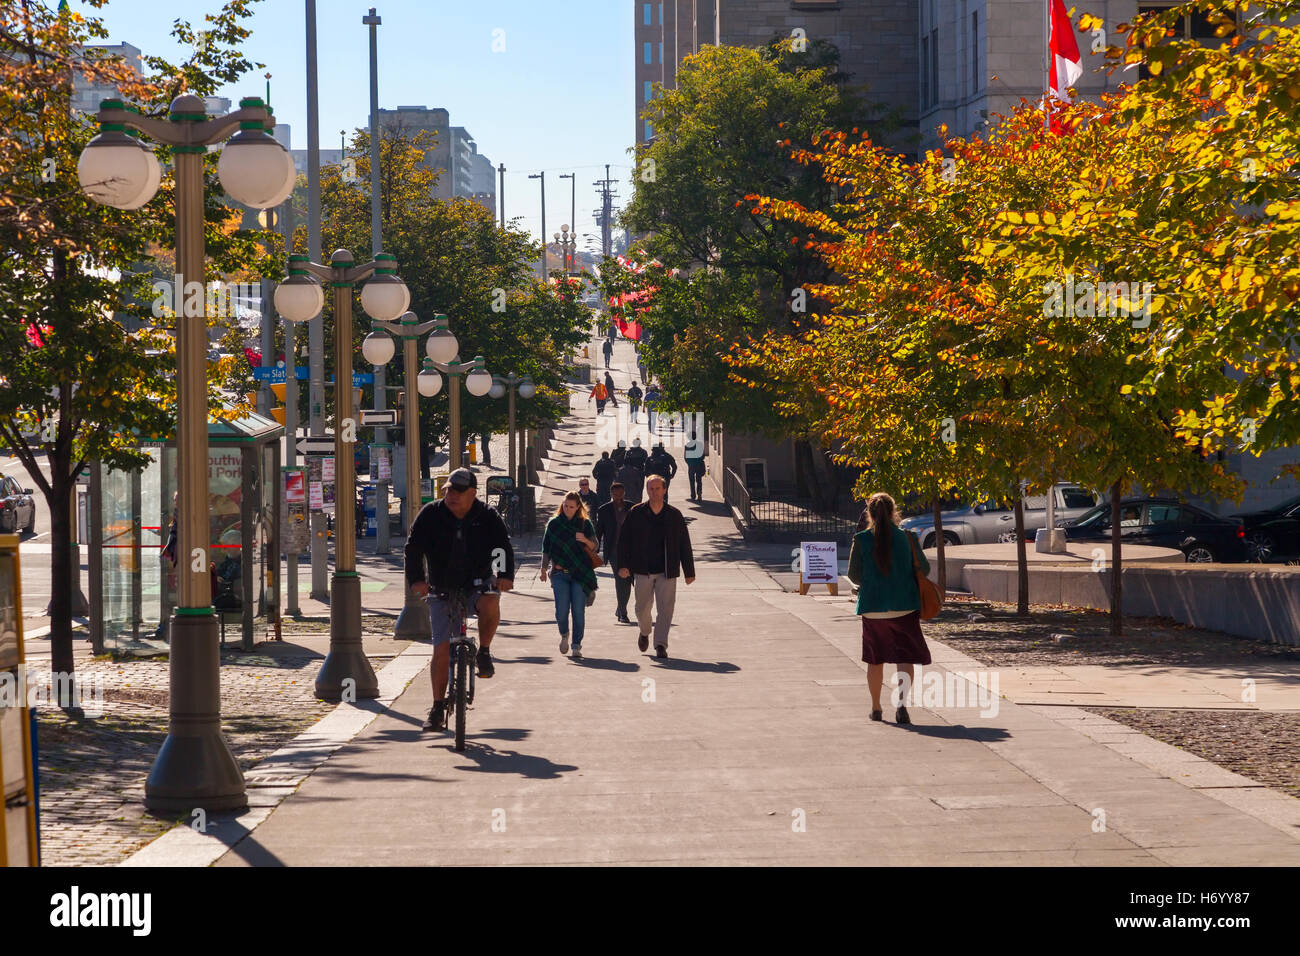 Ein typisches entlang der Elgin Street mit Menschen zu Fuß auf einem Bürgersteig sowie eine Person, die Radfahren in Ottawa, Ontario, Kanada. Stockfoto